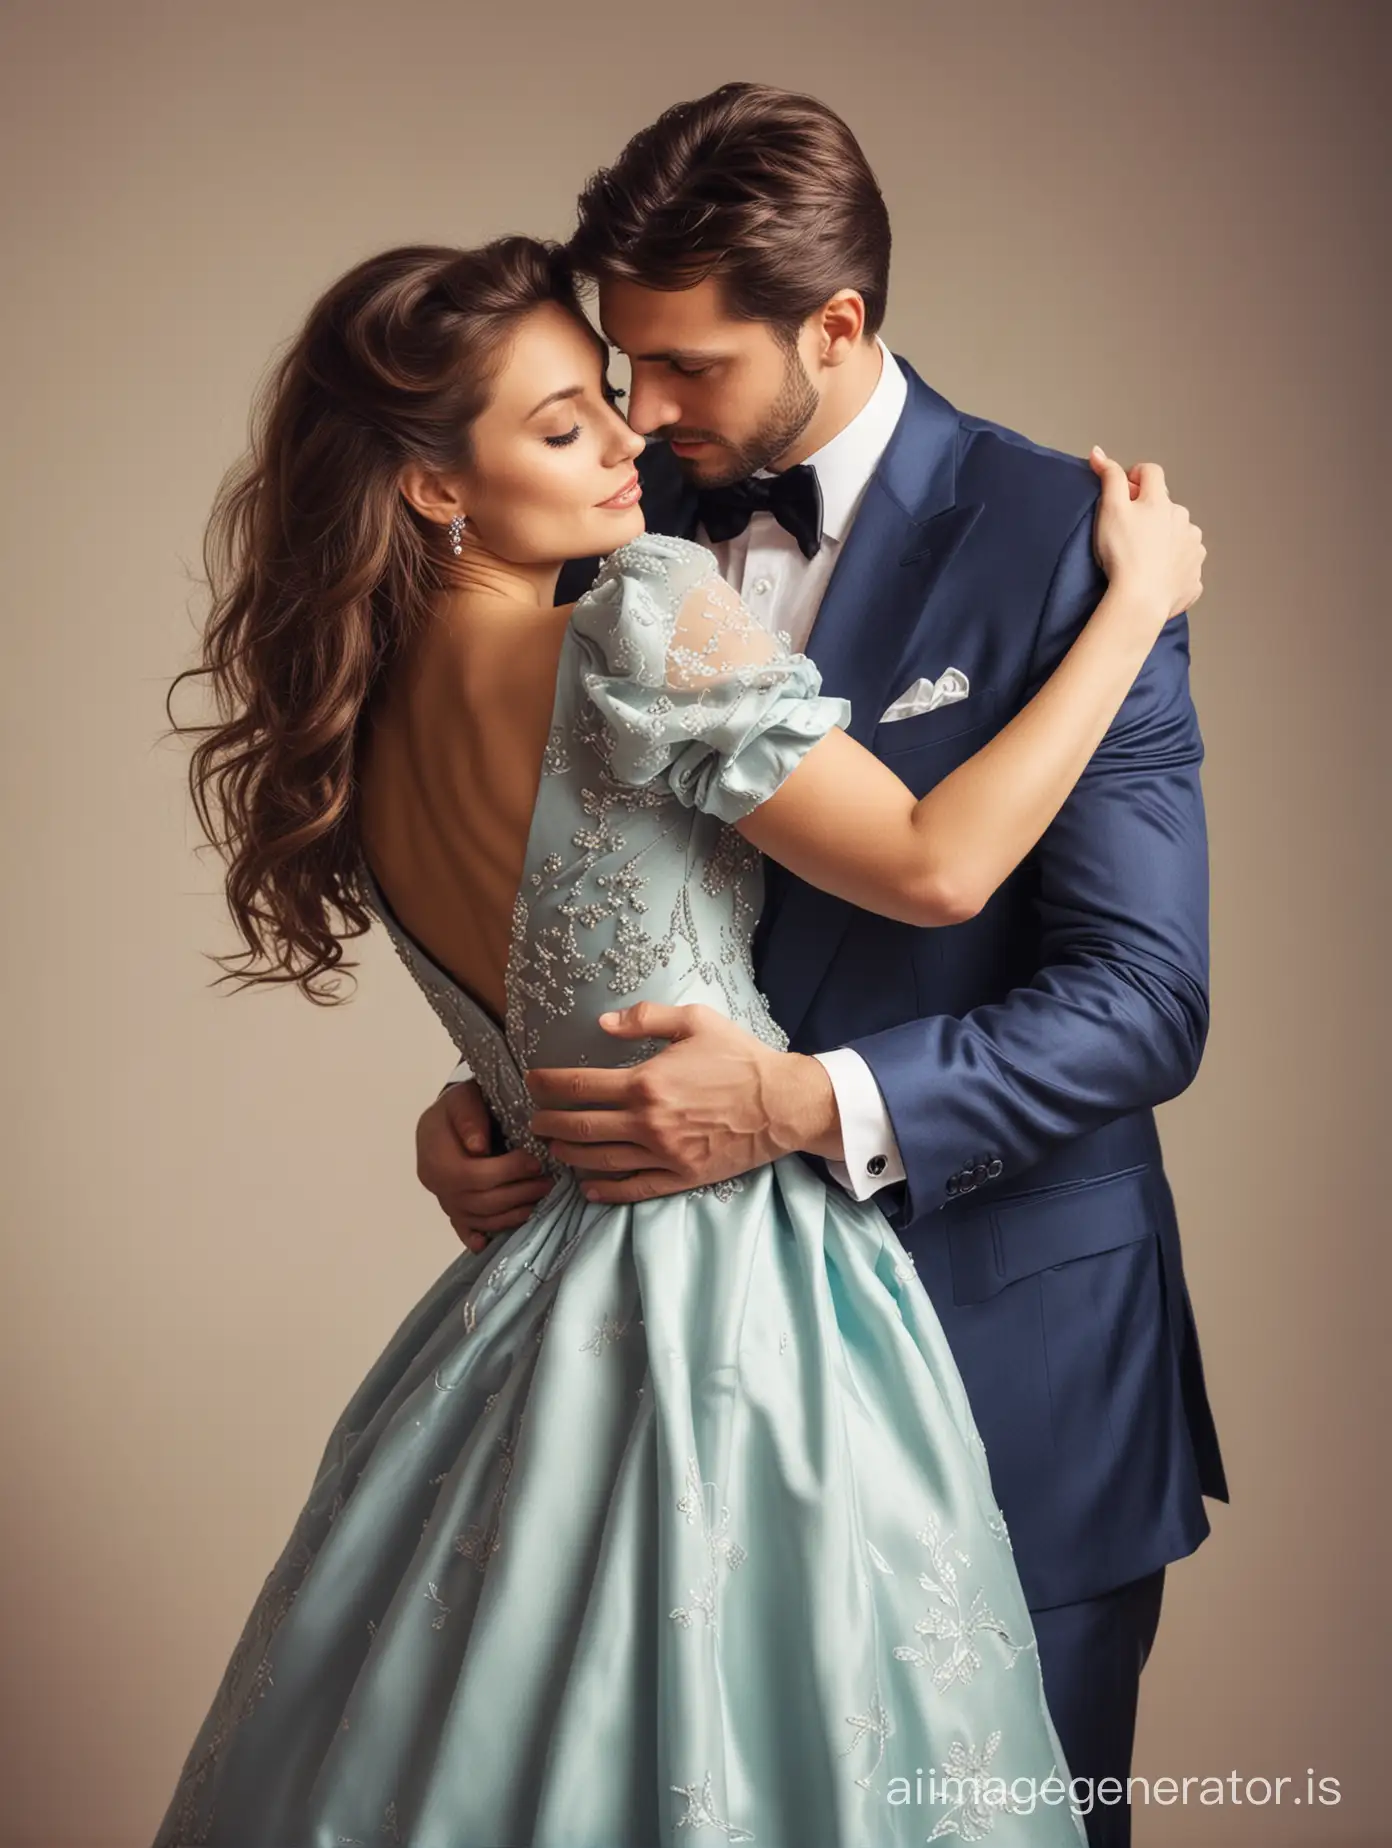 Elegant-Couple-Enjoying-a-Warm-Embrace-in-Stylish-Attire